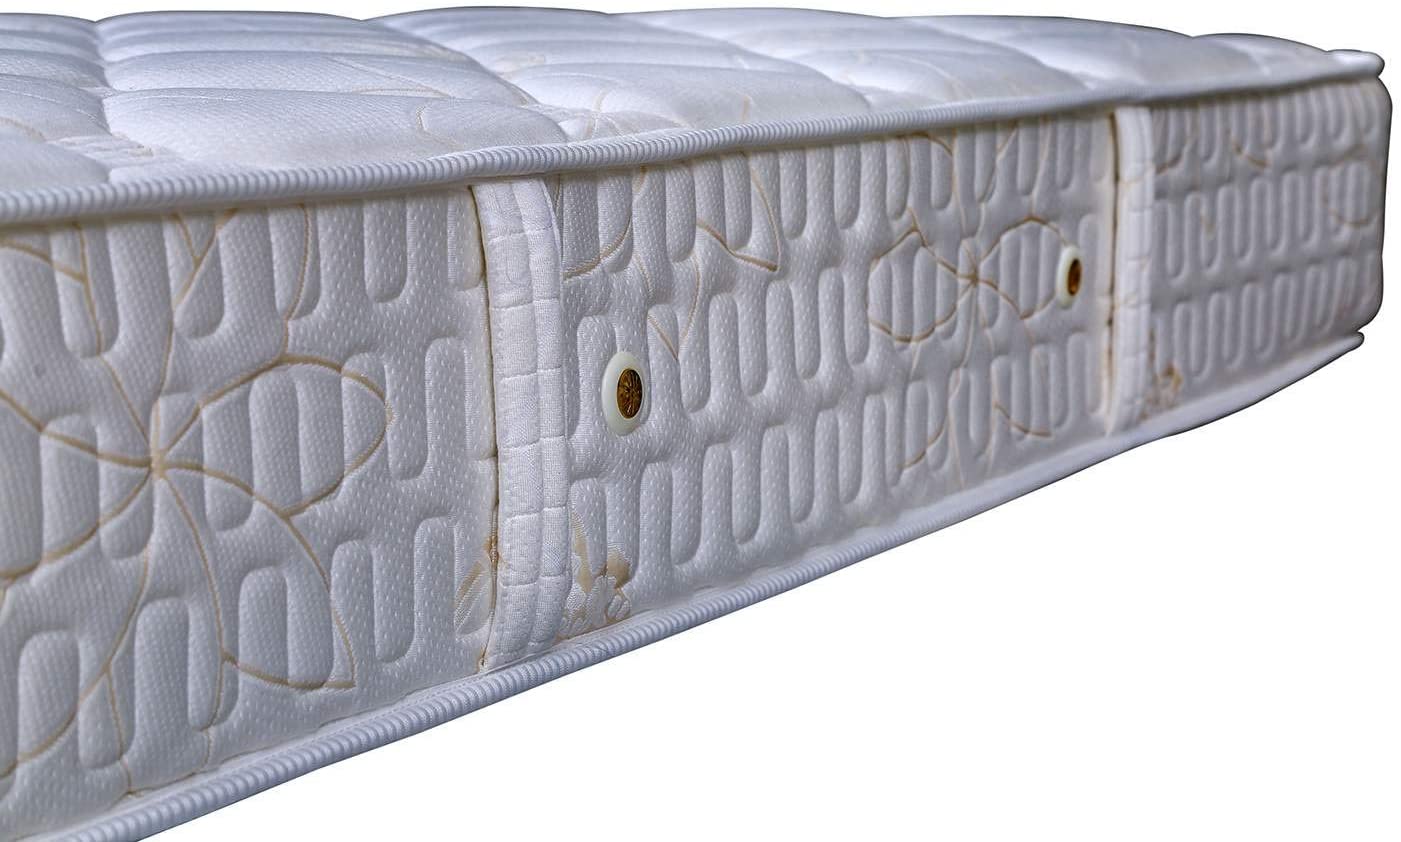 PAN Home Breeze Comfort Mattress, 28 X 200 X 150 cm